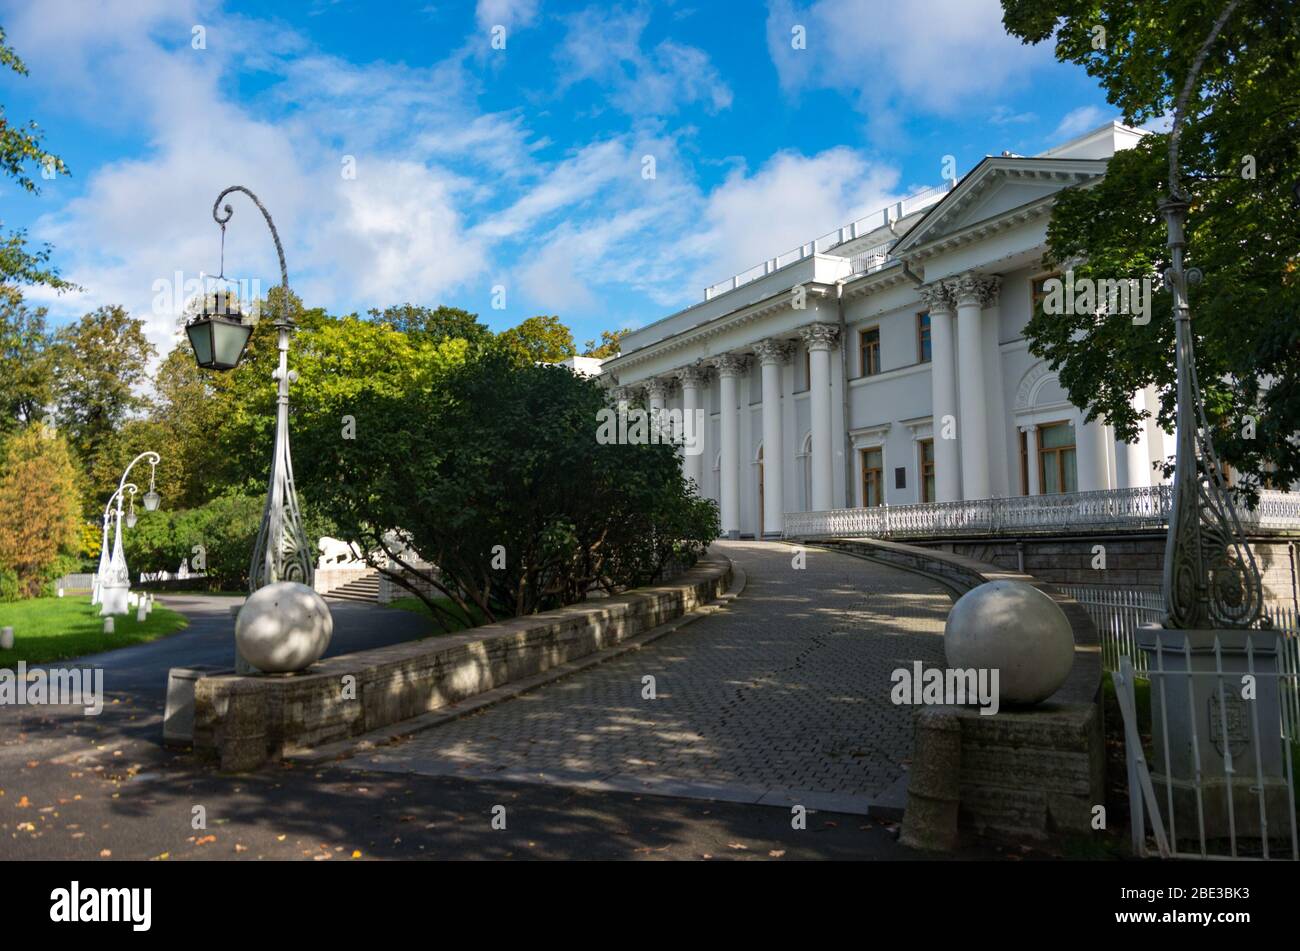 Sankt-Peterburg, Russie - 17 septembre 2017 : Palais Elaginoostrovsky sur l'île d'Elagin à Saint-Pétersbourg Banque D'Images